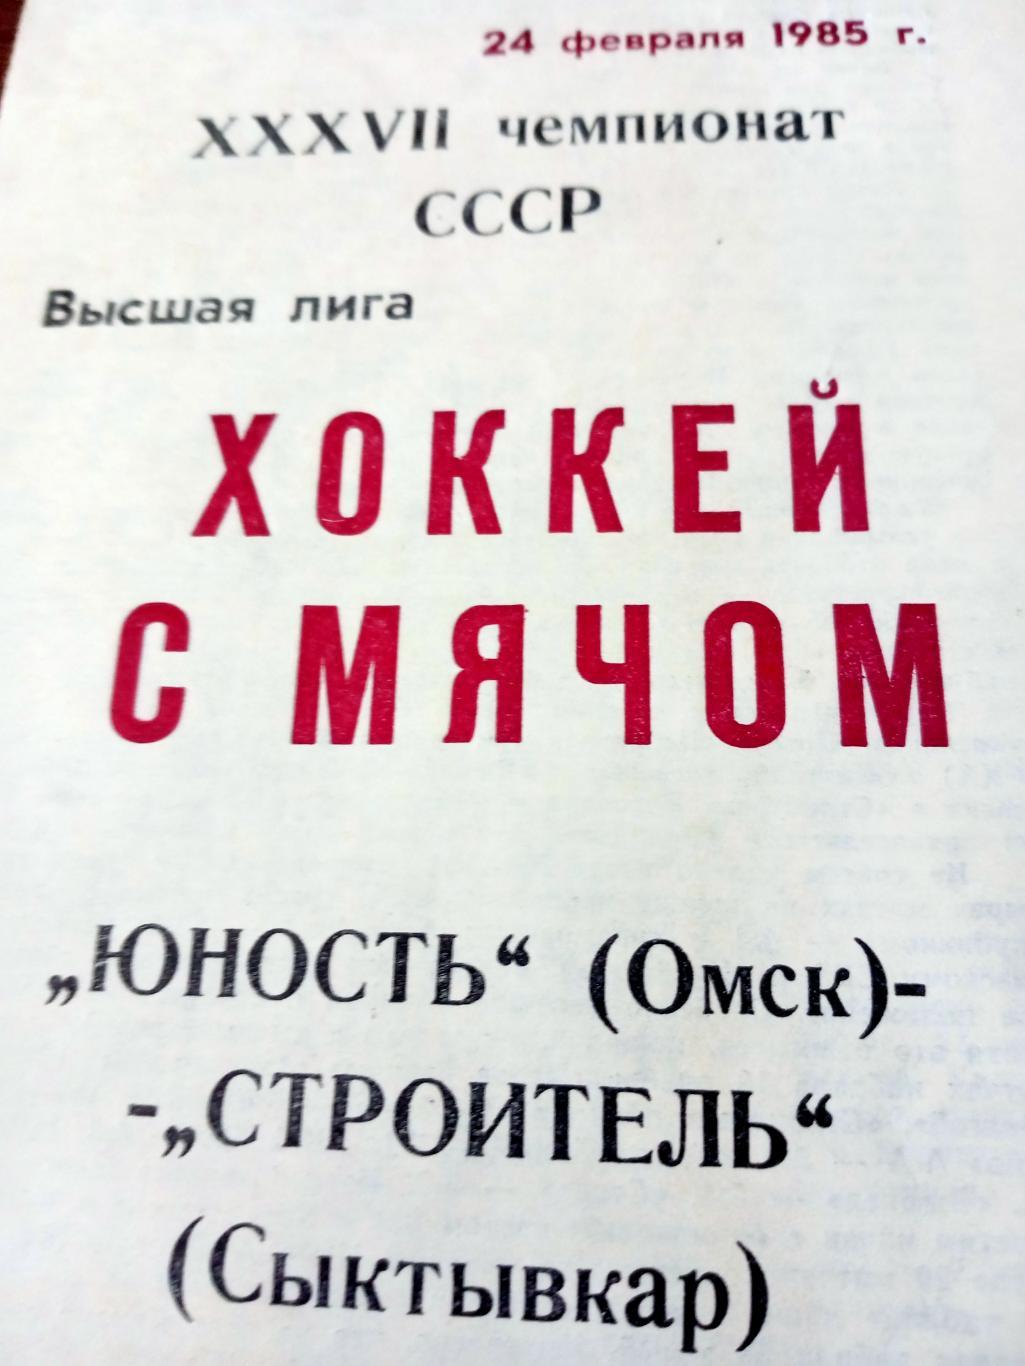 + Газетный отчет! Юность Омск - Строитель Сыктывкар. 24 февраля 1985 год